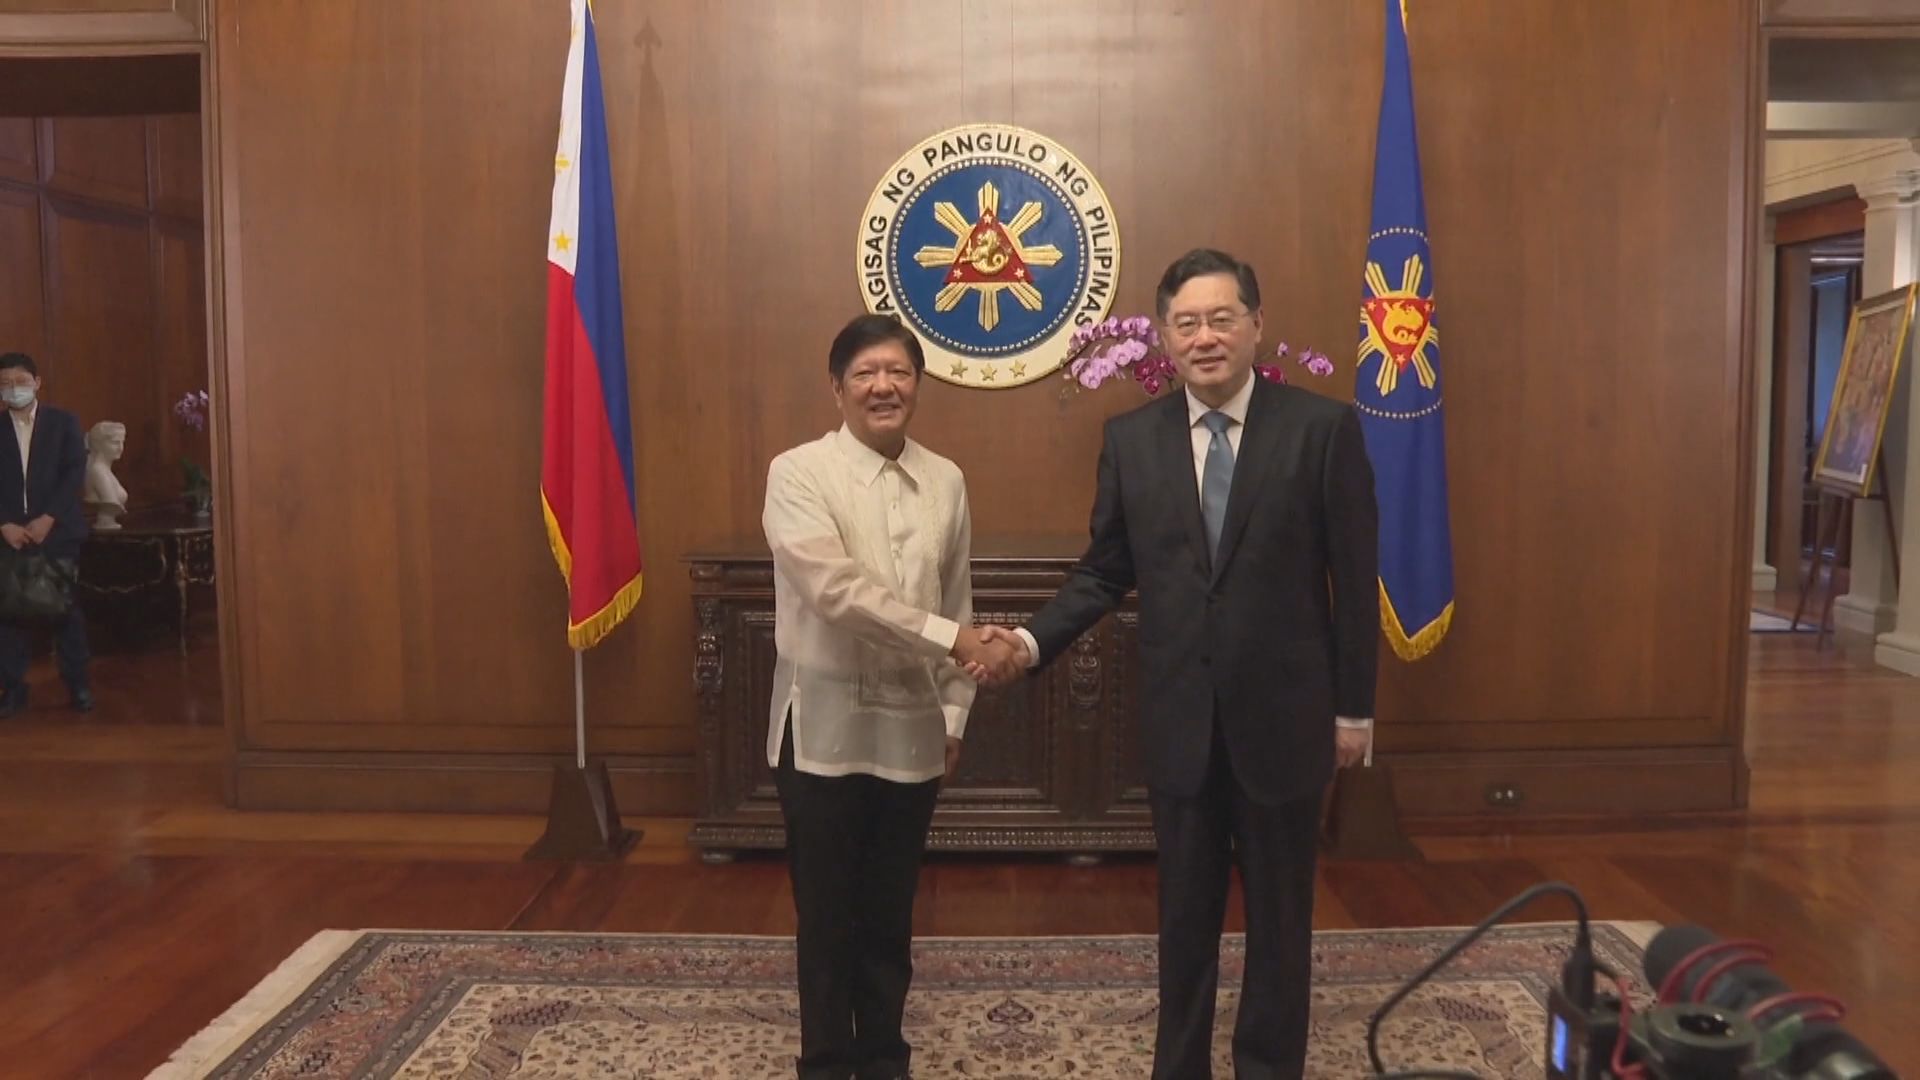 秦剛在菲律賓晤小馬可斯　同意建立溝通渠道解決南海爭端